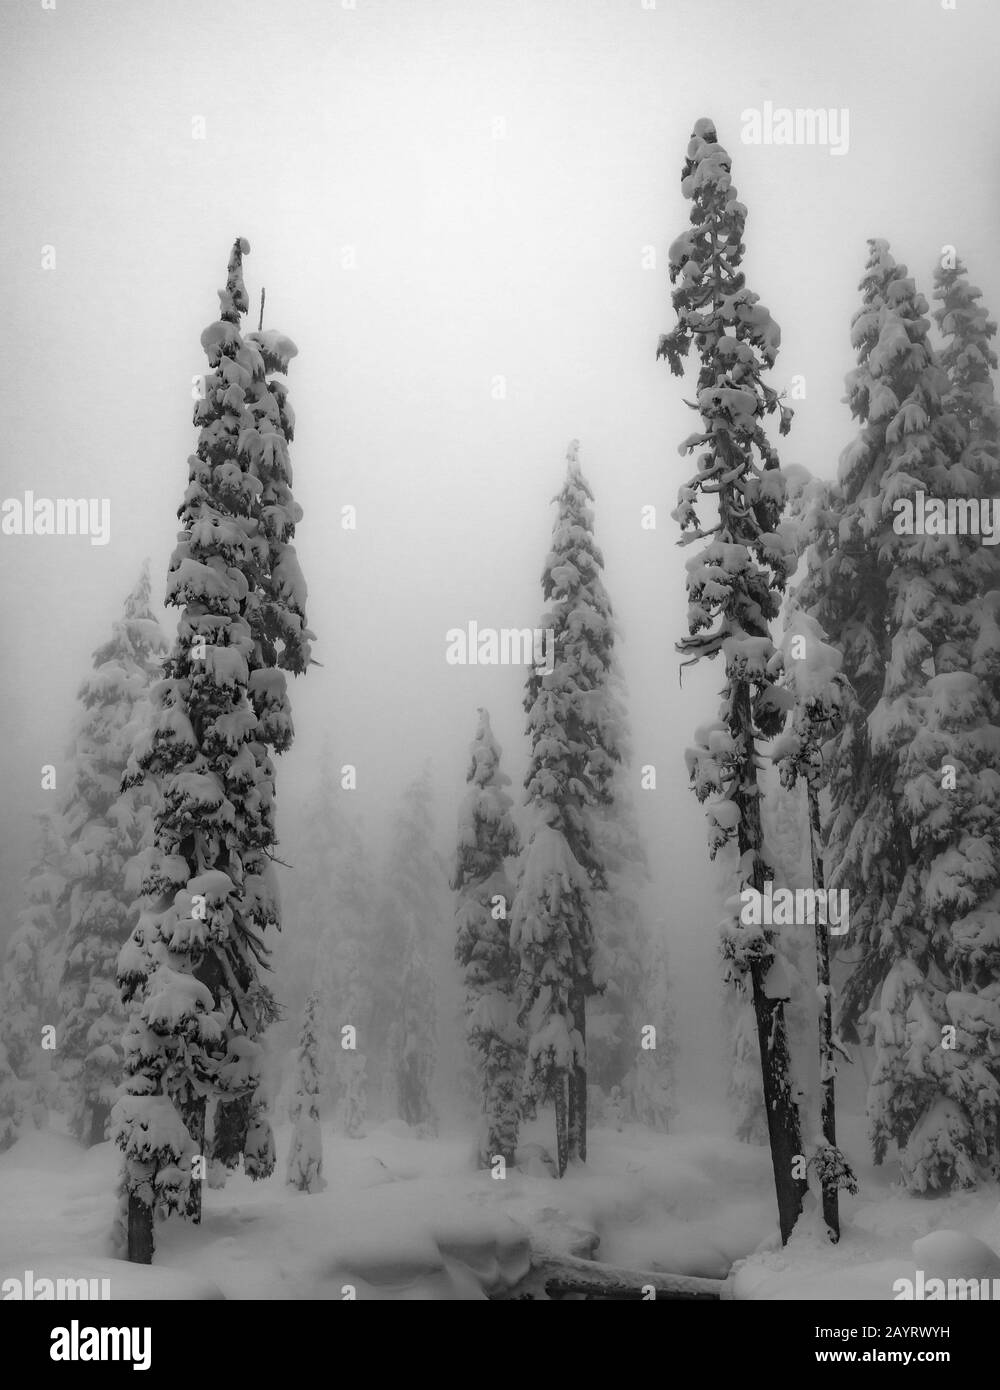 WA17431-00-BW...WASHINGTON - Journée d'hiver dans la nature sauvage des lacs alpins, Mount Baker Snoqualmie Wilderness. Banque D'Images